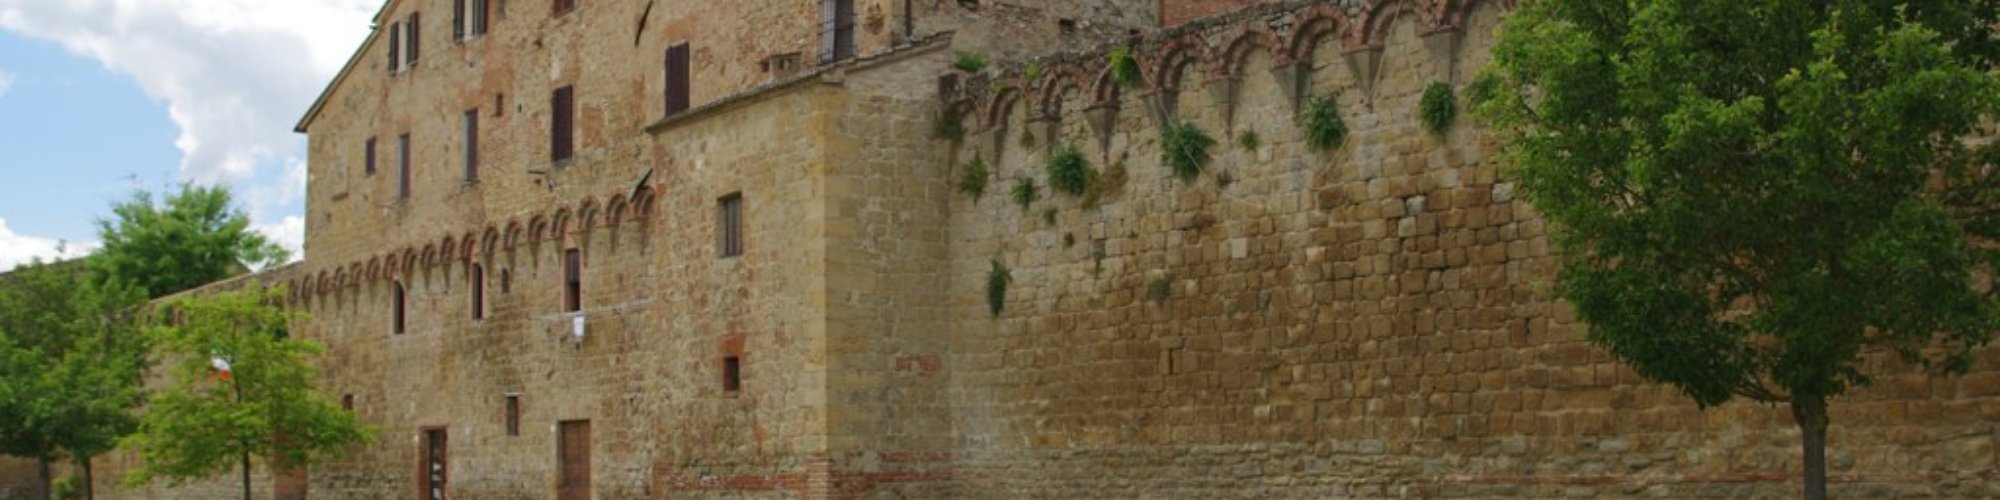 Buonconvento walls